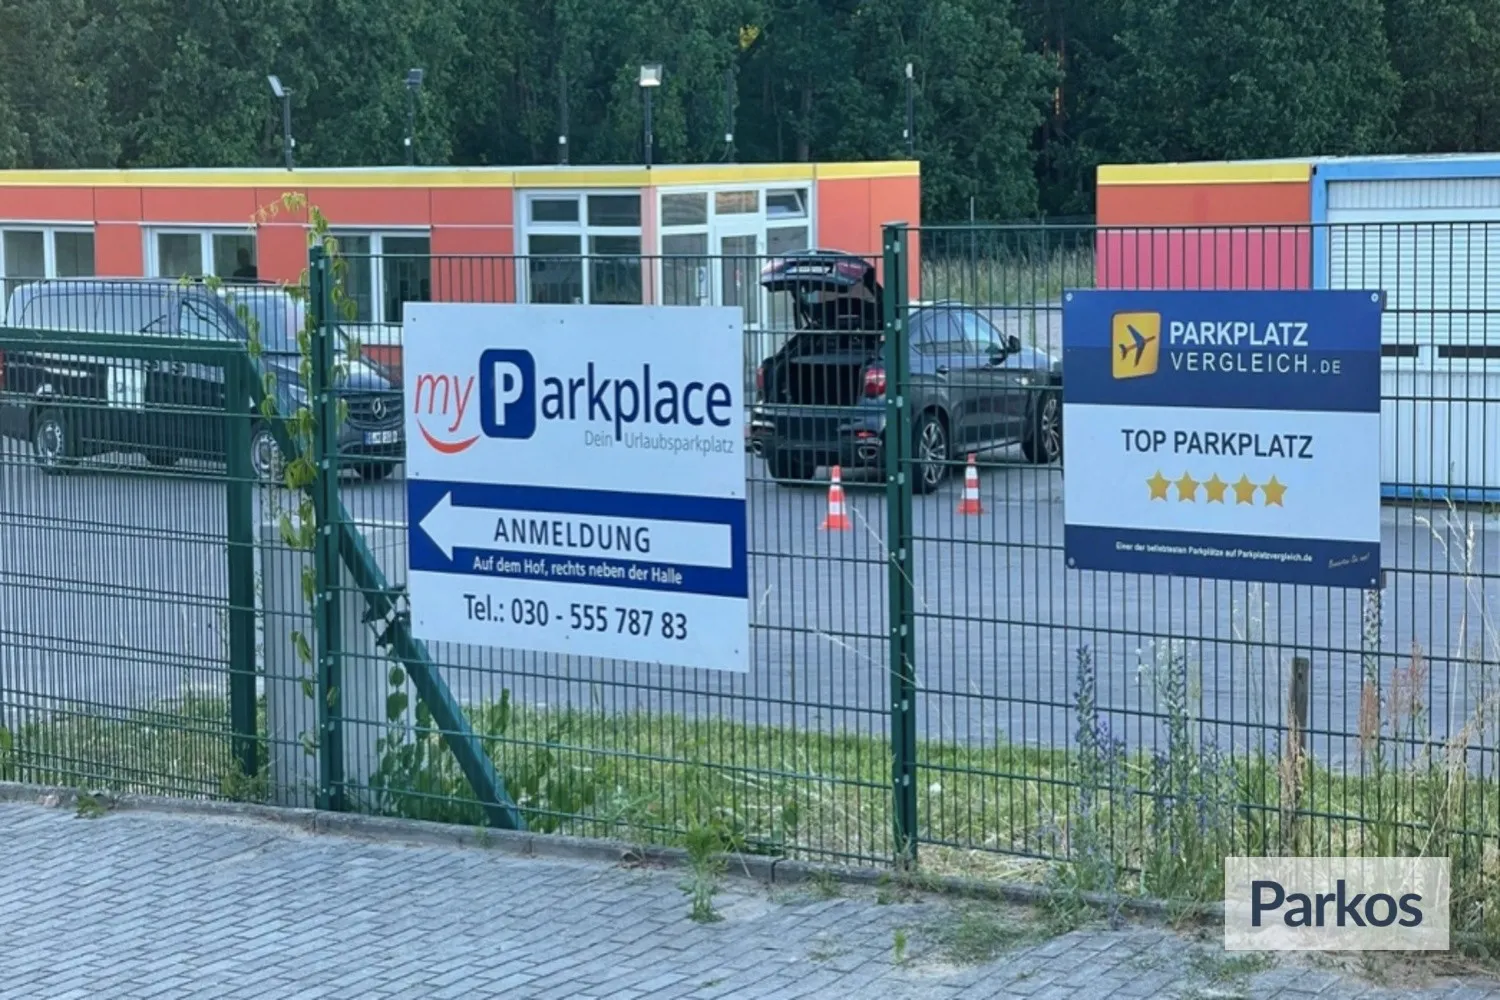 myParkplace - Parking Berlin Brandenburg - picture 1